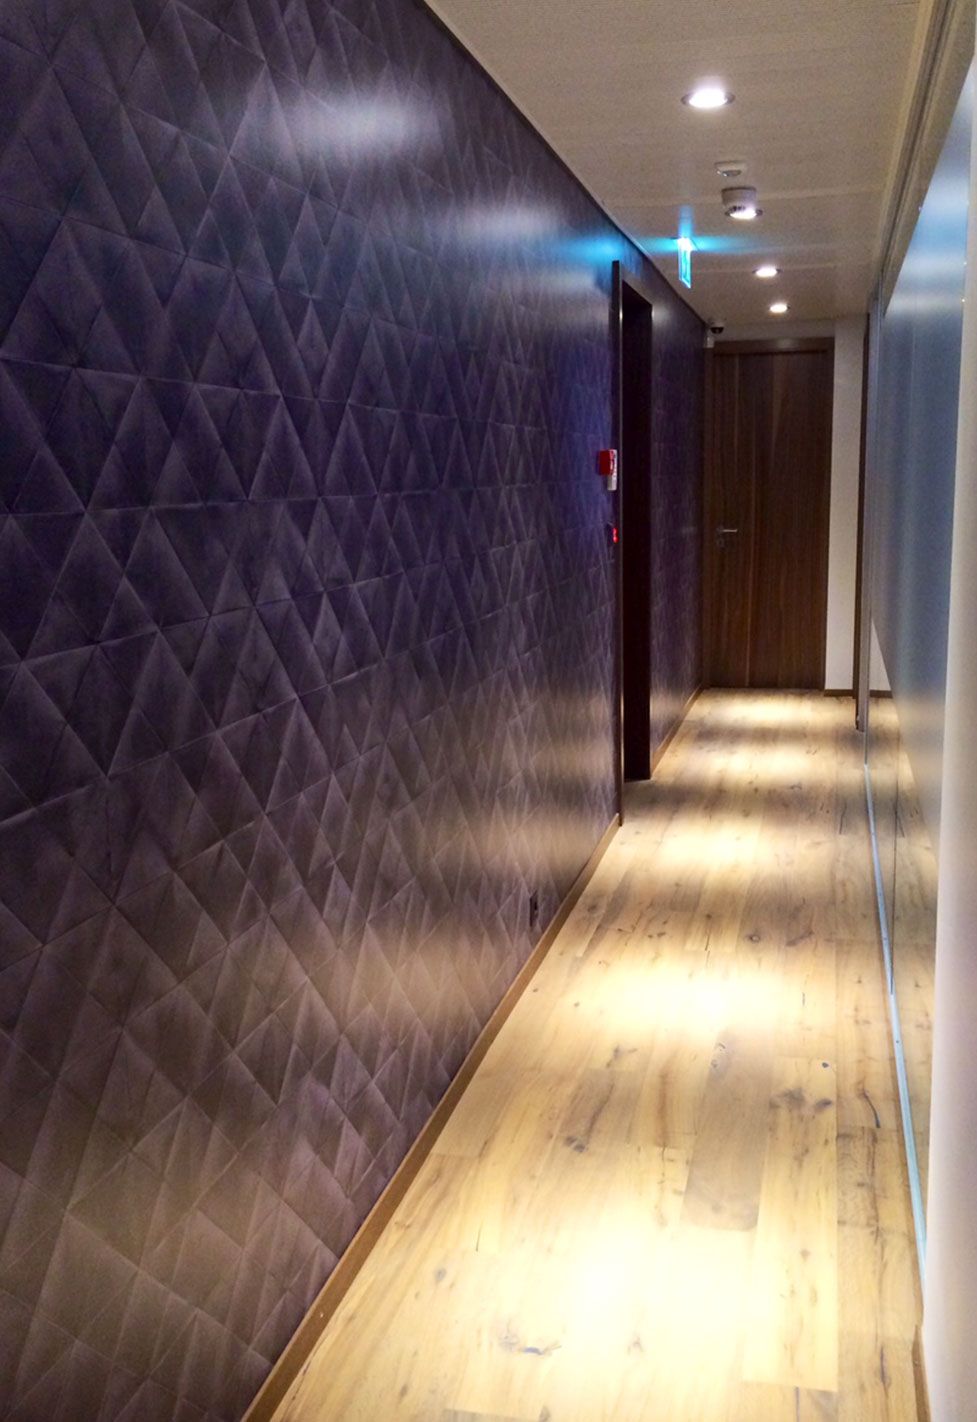 Couloir des bureaux de la fiducière Olexco. Réalisation ID Interieur Design, par Anne-Laure Ferry-Adam, architecte d'intérieur à Genève.